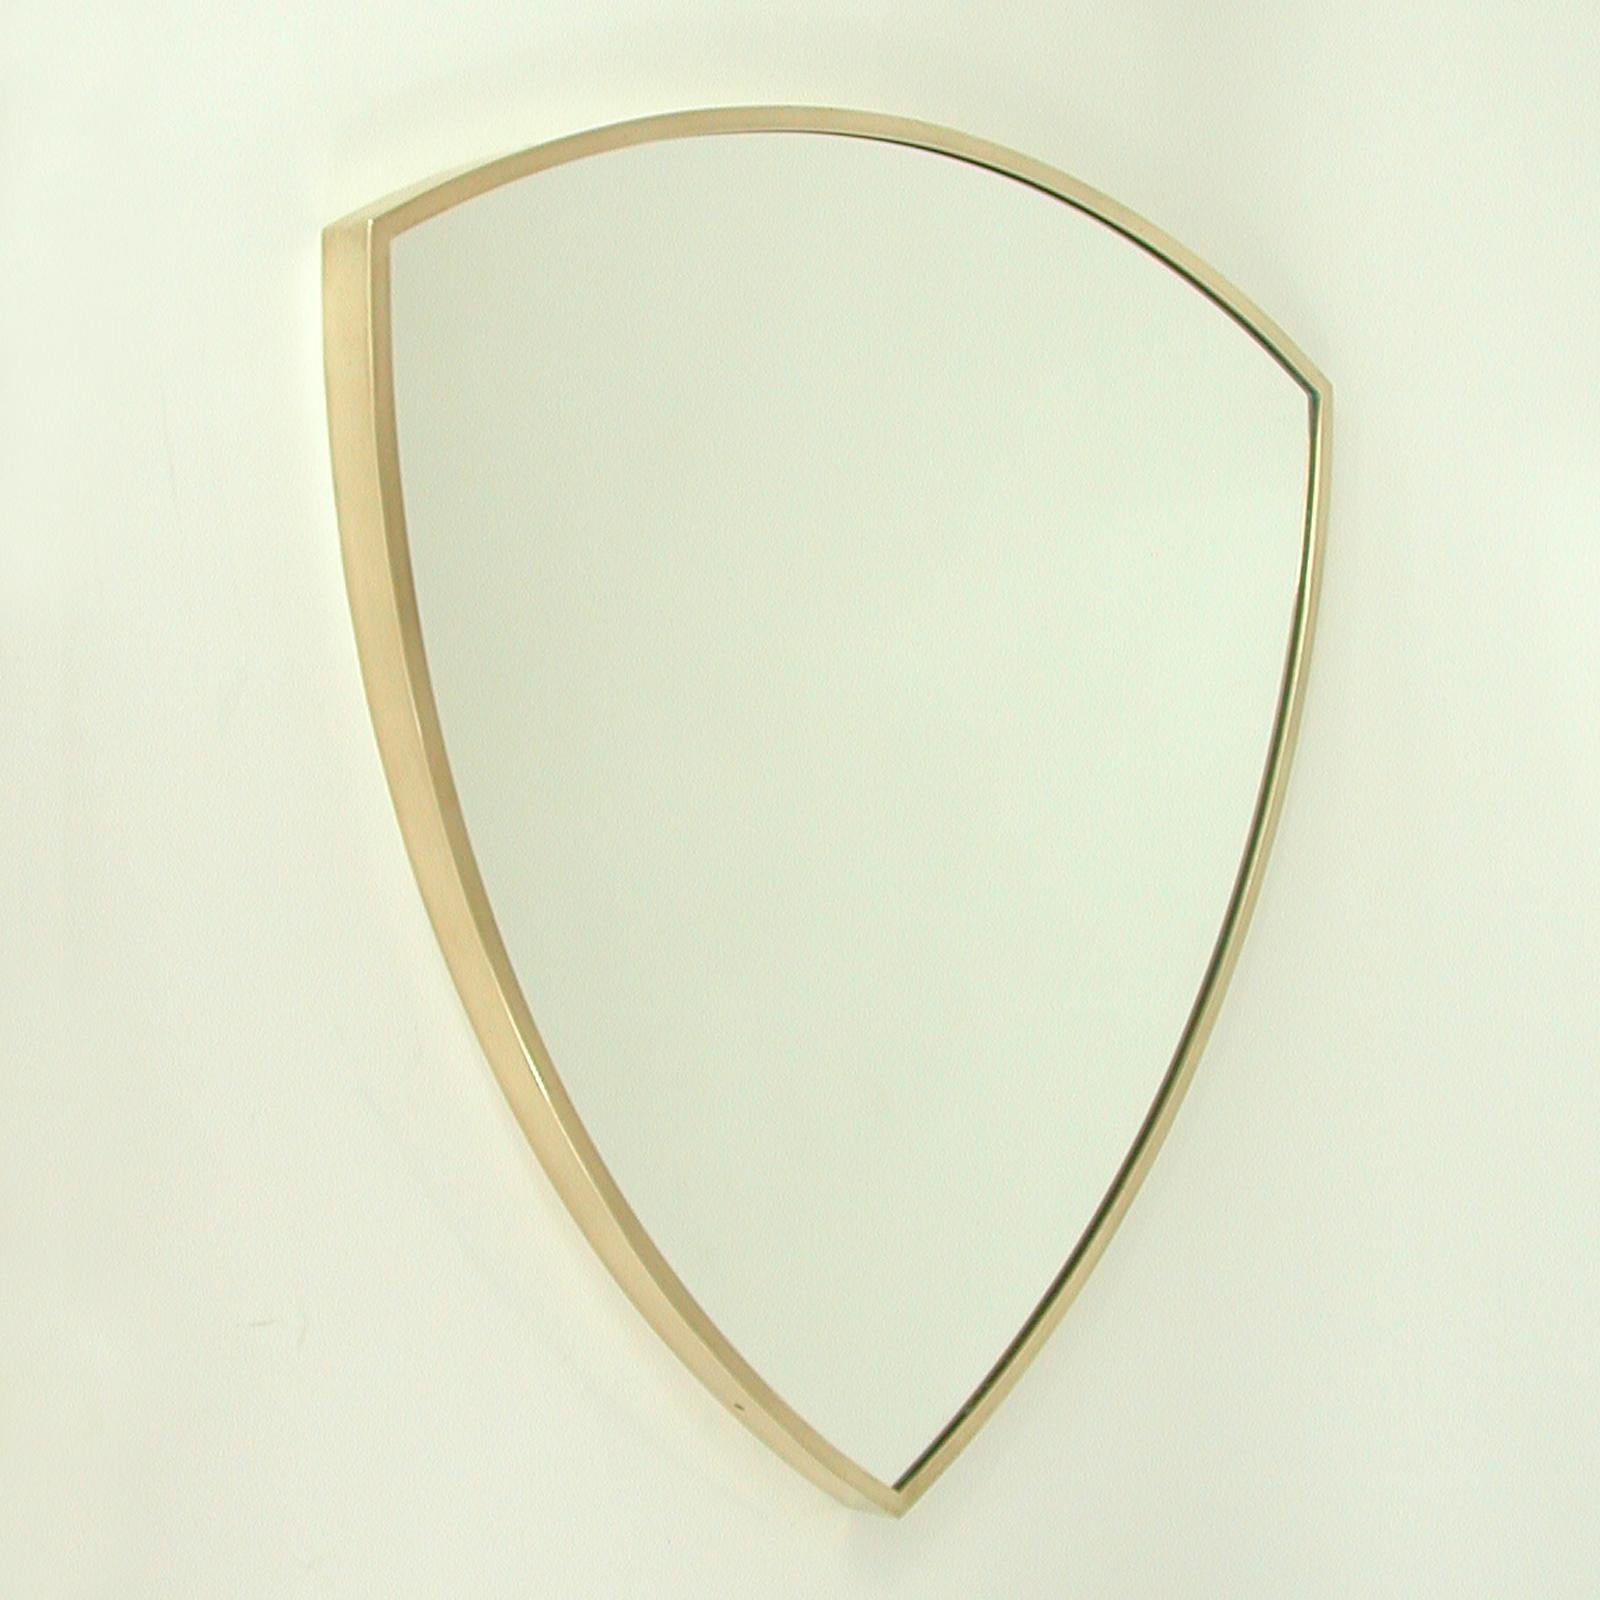 Ce miroir mural ou de cheminée minimaliste en forme de bouclier a été conçu et fabriqué en Italie dans les années 1950. Il présente un cadre en laiton massif avec un verre miroir et un arrière en bois.

Très bon état vintage avec peu de signes